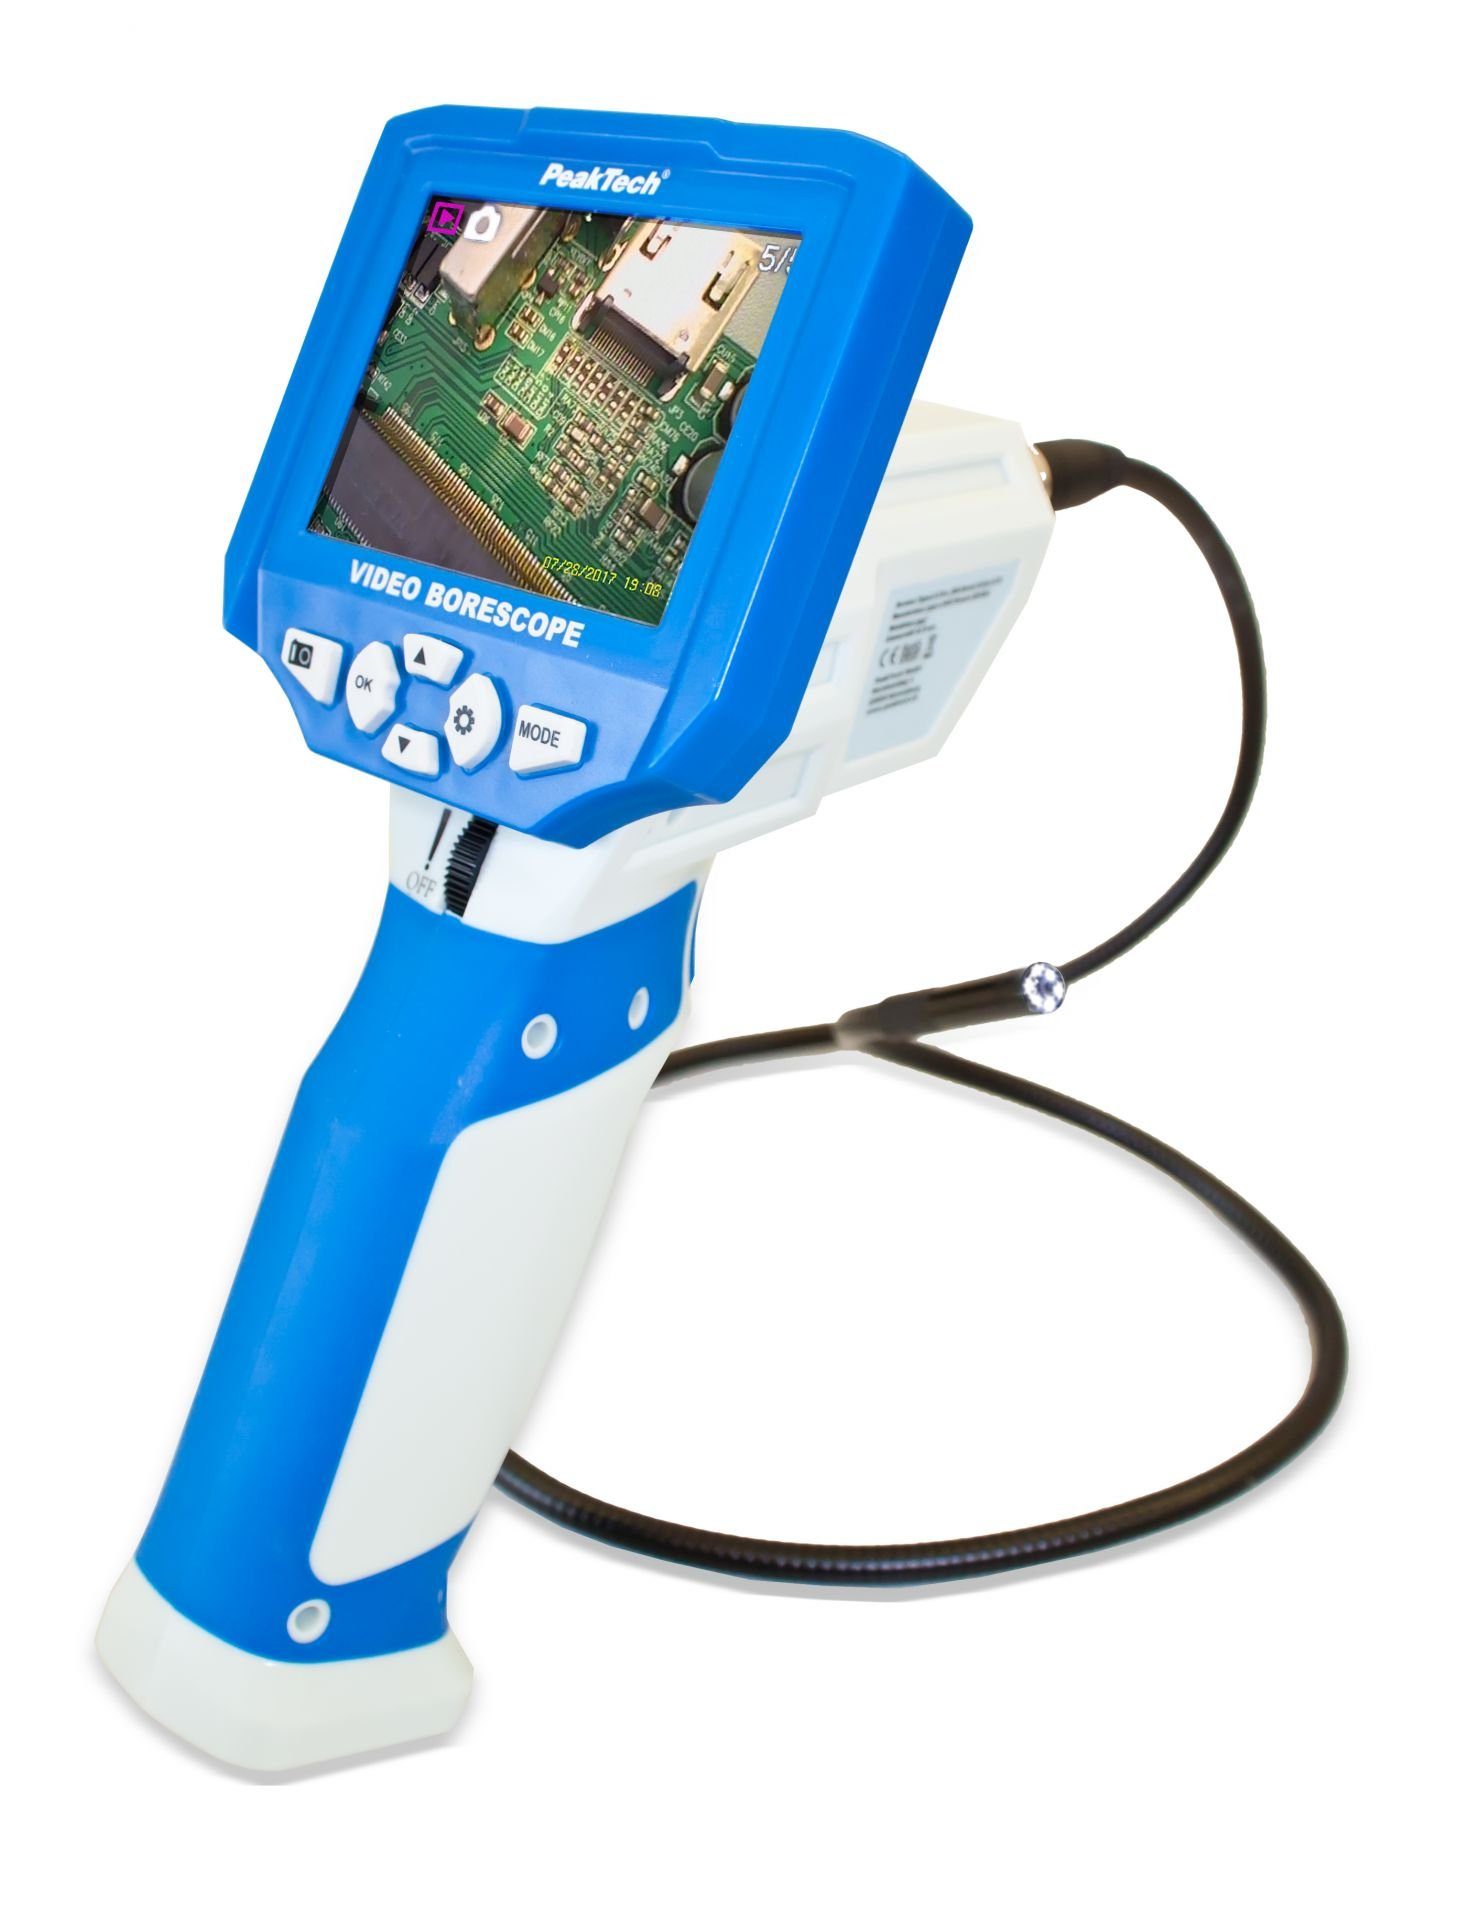 PeakTech Bild- und ~ 5600: Video Inspektionskamera Endoskopkamera PeakTech Videoaufzeichnung